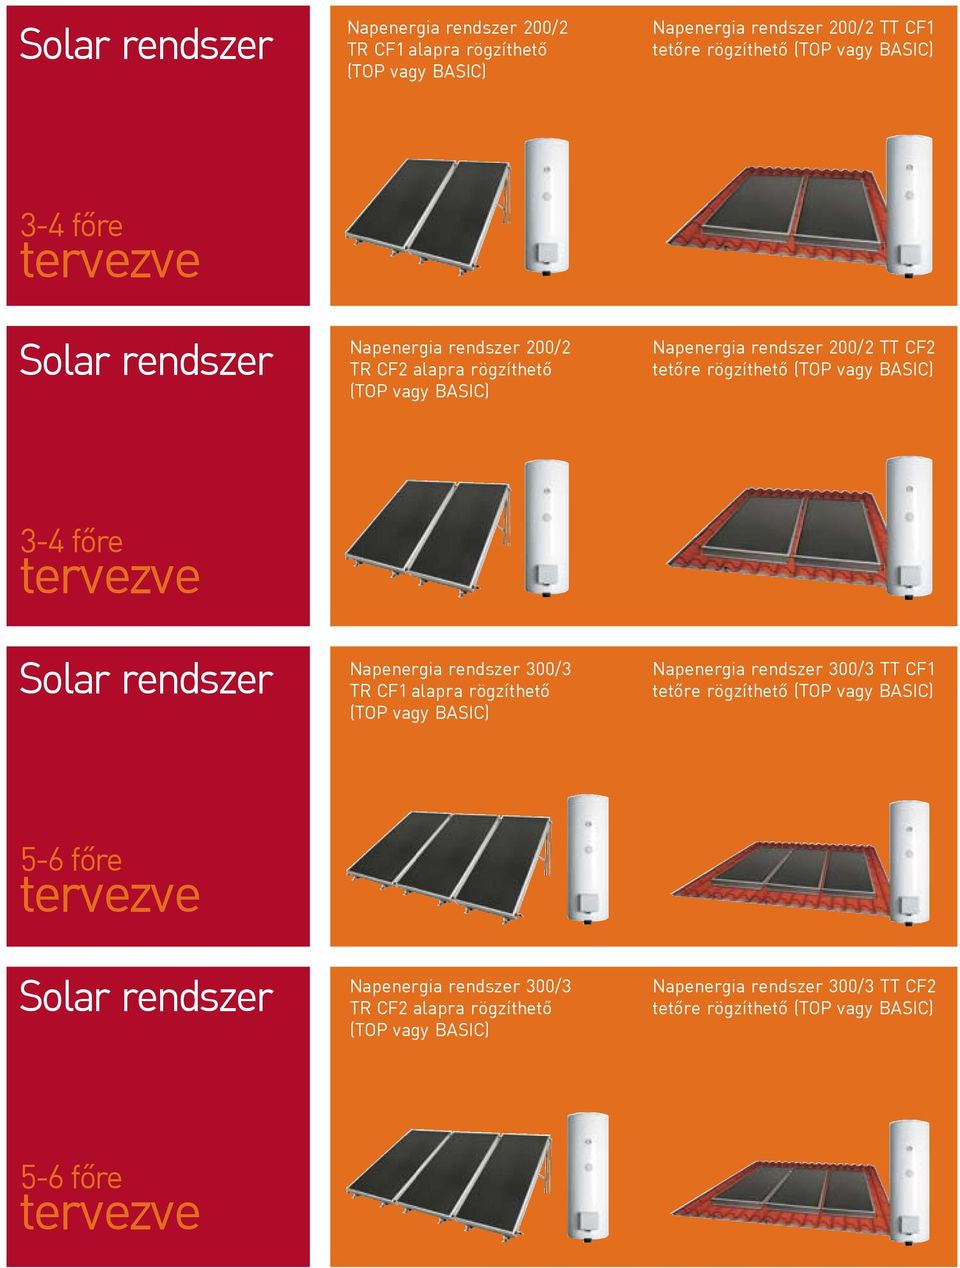 Solar rendszer Napenergia rendszer 300/3 TR CF1 alapra rögzíthető (TOP vagy BASIC) Napenergia rendszer 300/3 TT CF1 tetőre rögzíthető (TOP vagy BASIC) 56 főre tervezve